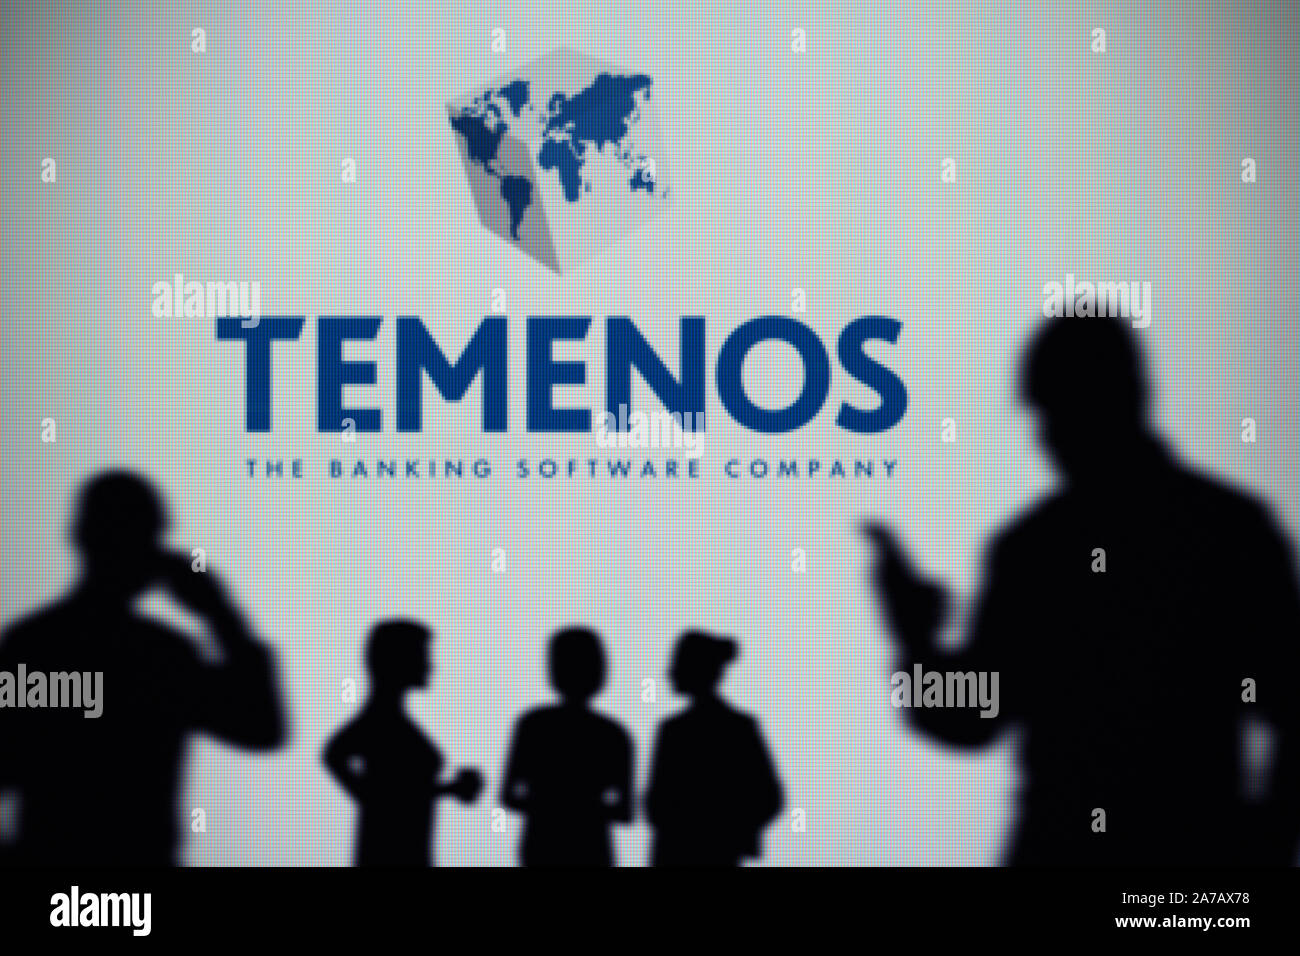 Le Groupe Temenos logo est vu sur un écran LED à l'arrière-plan tandis qu'une silhouette personne utilise un smartphone (usage éditorial uniquement) Banque D'Images